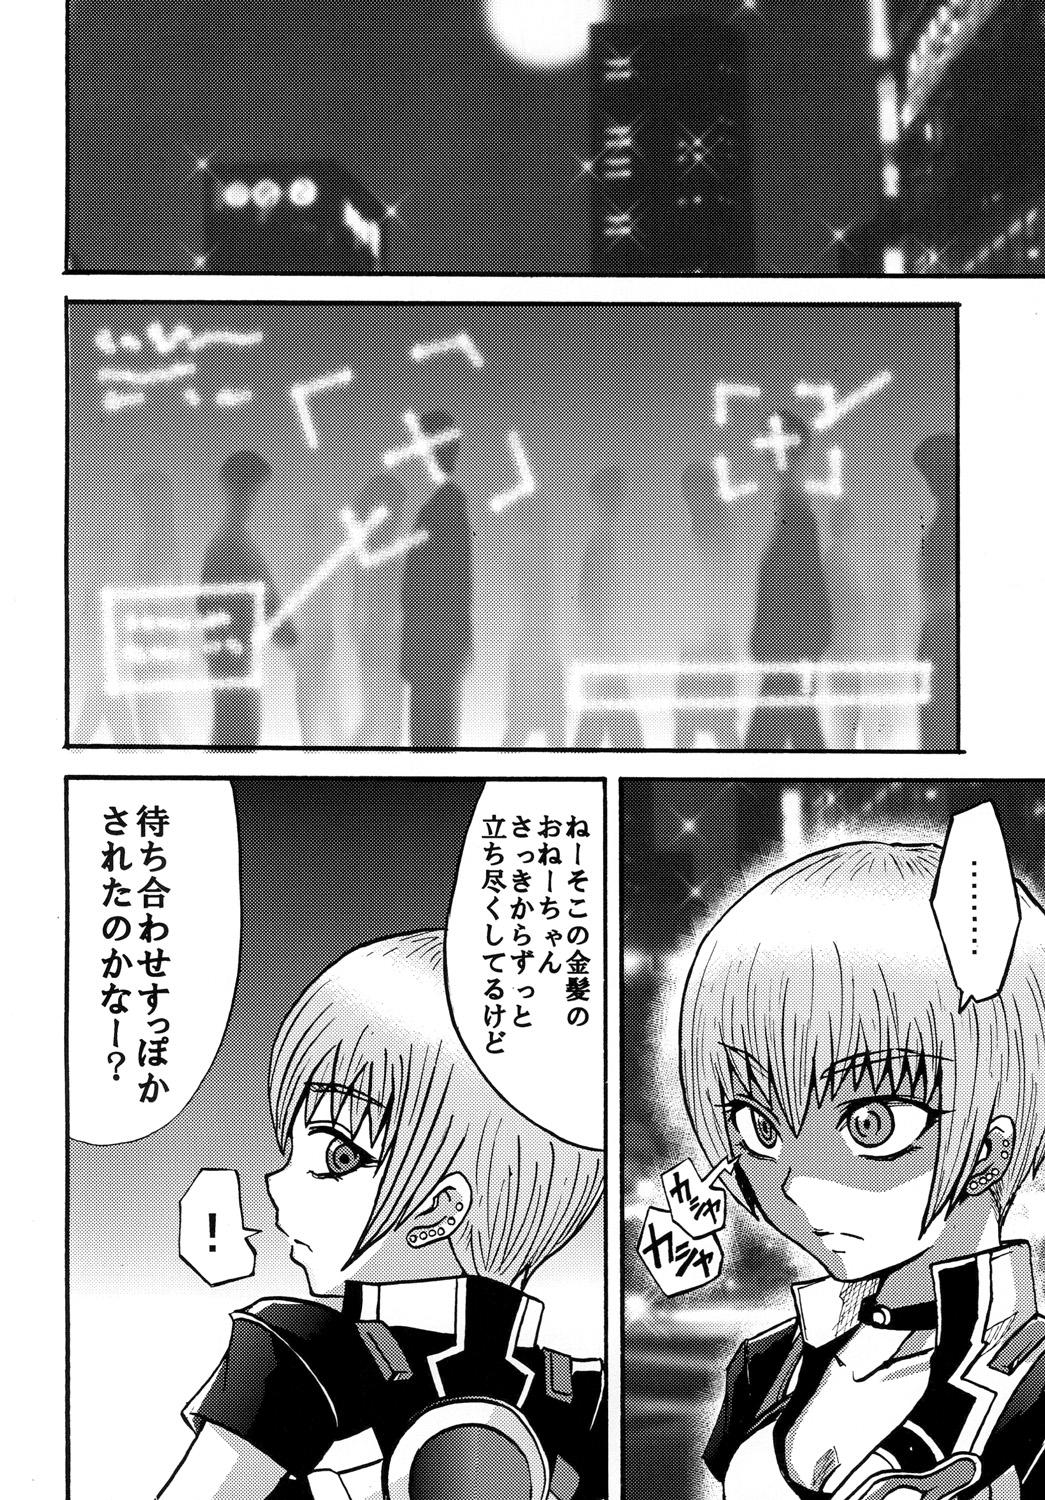 Lesbian Sono Na wa Onezero - Ultraman Anal Licking - Page 3